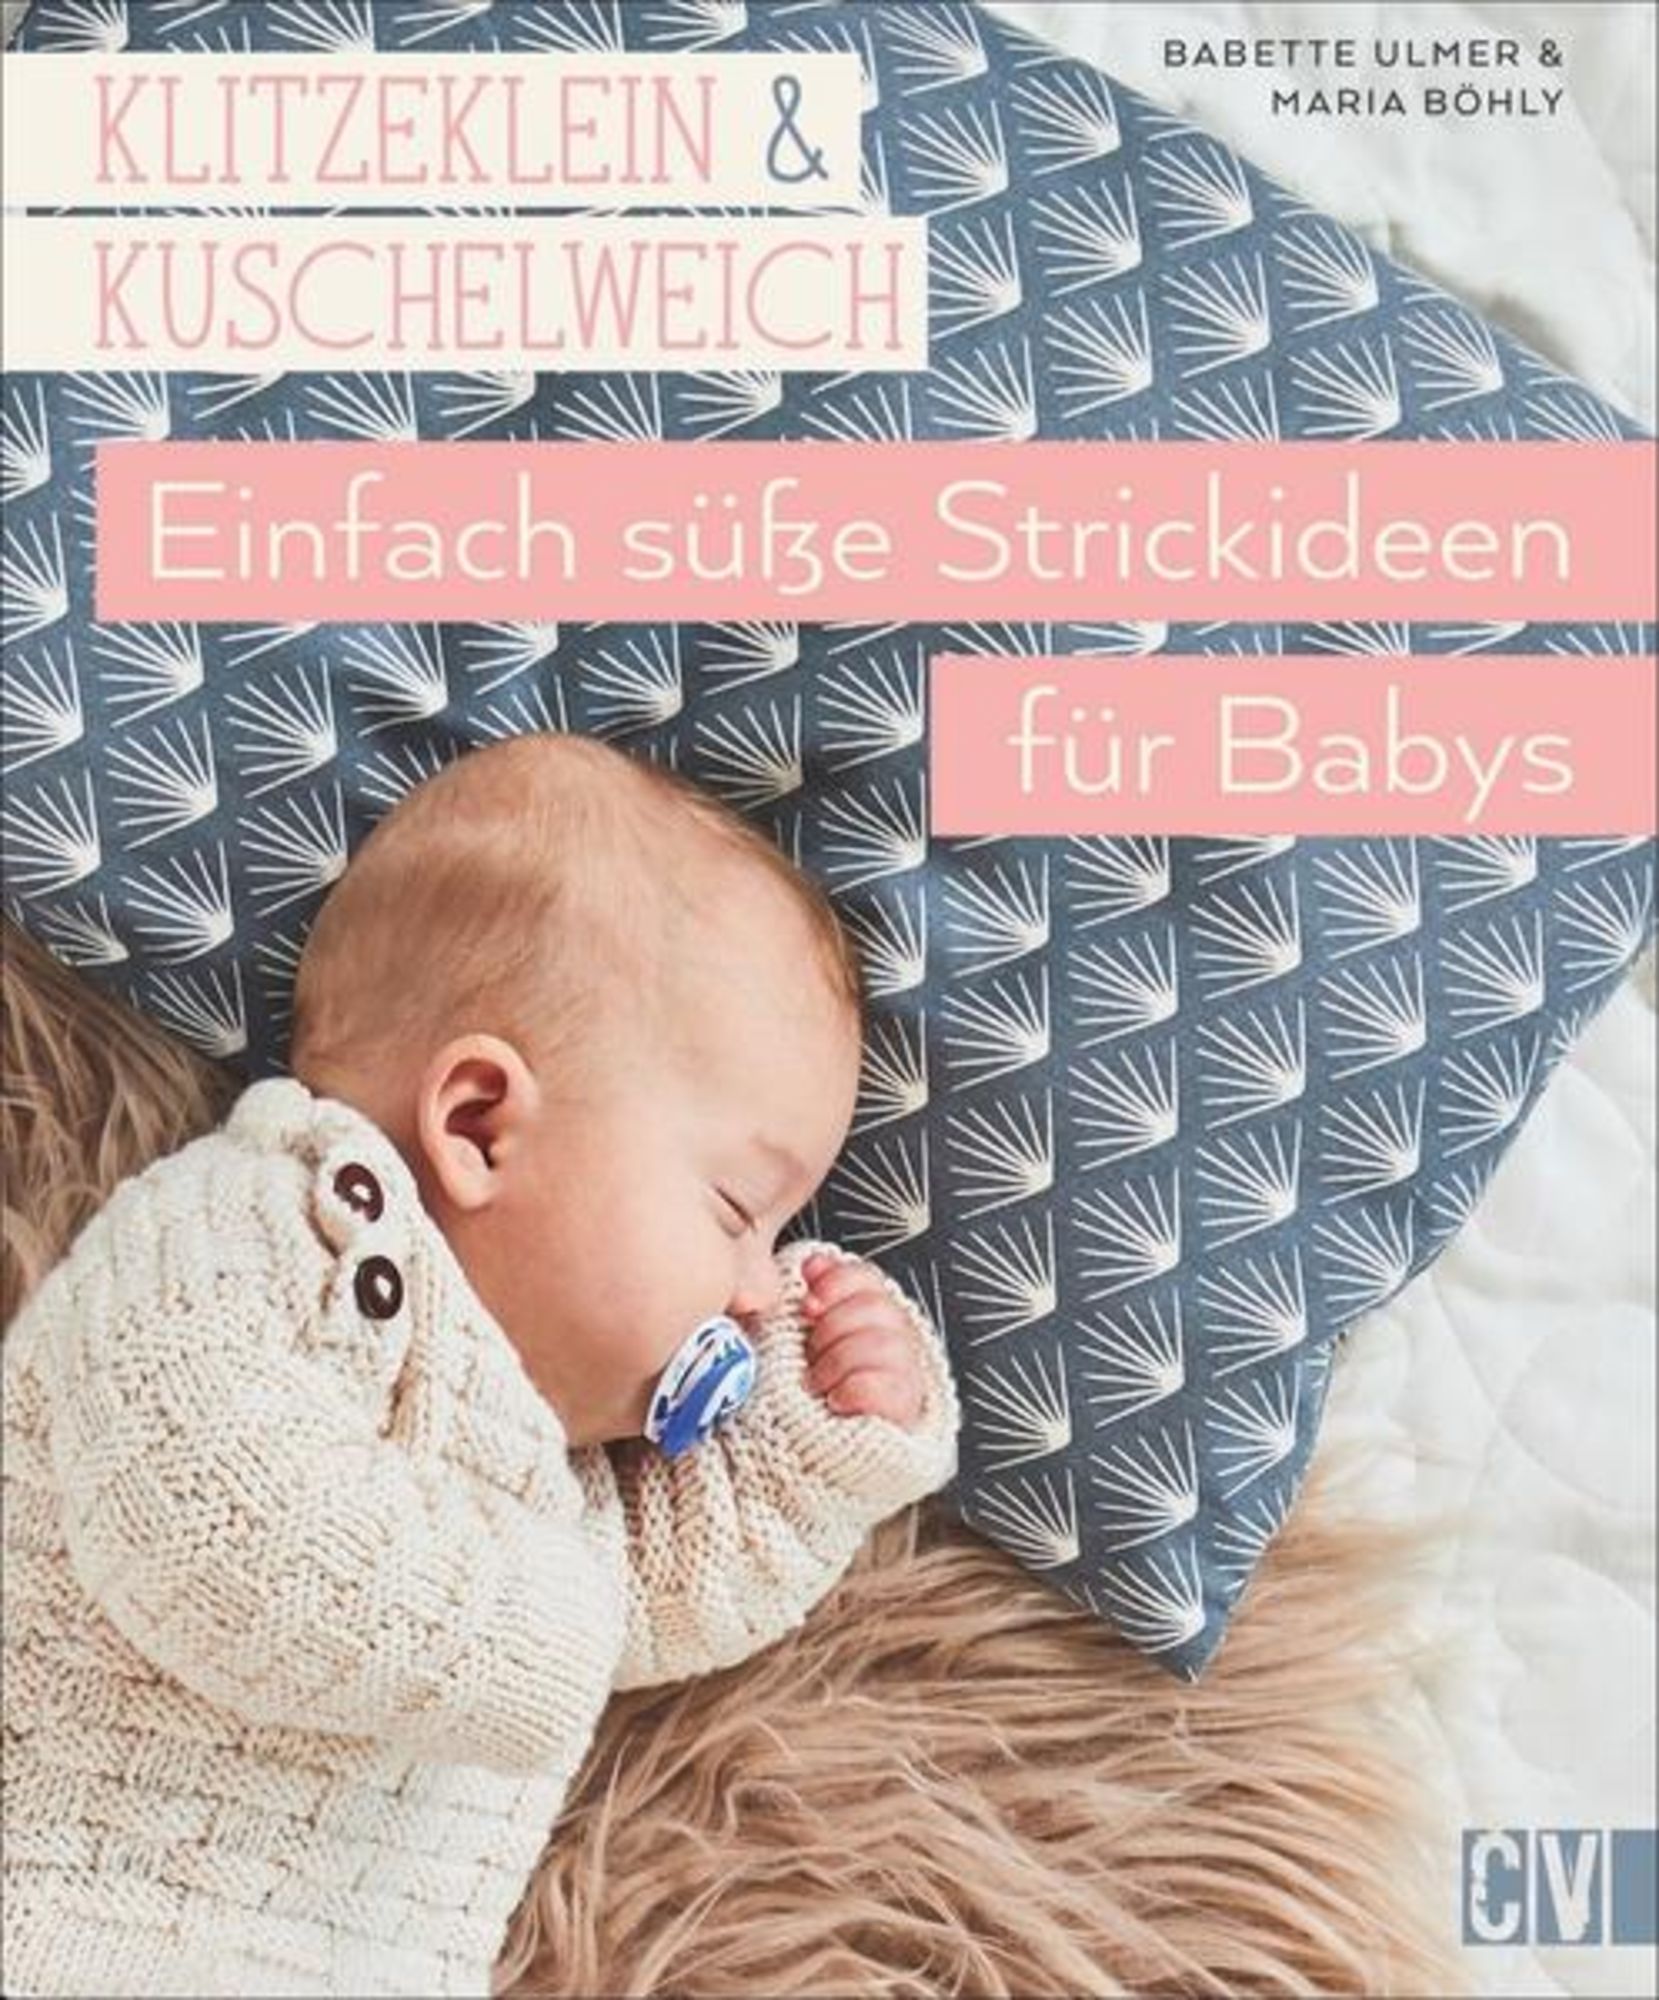 Klitzeklein & kuschelweich Einfach Buch - Babys\' \'Babette \'978-3-8410-6539-1\' - für von süße – Strickideen Ulmer